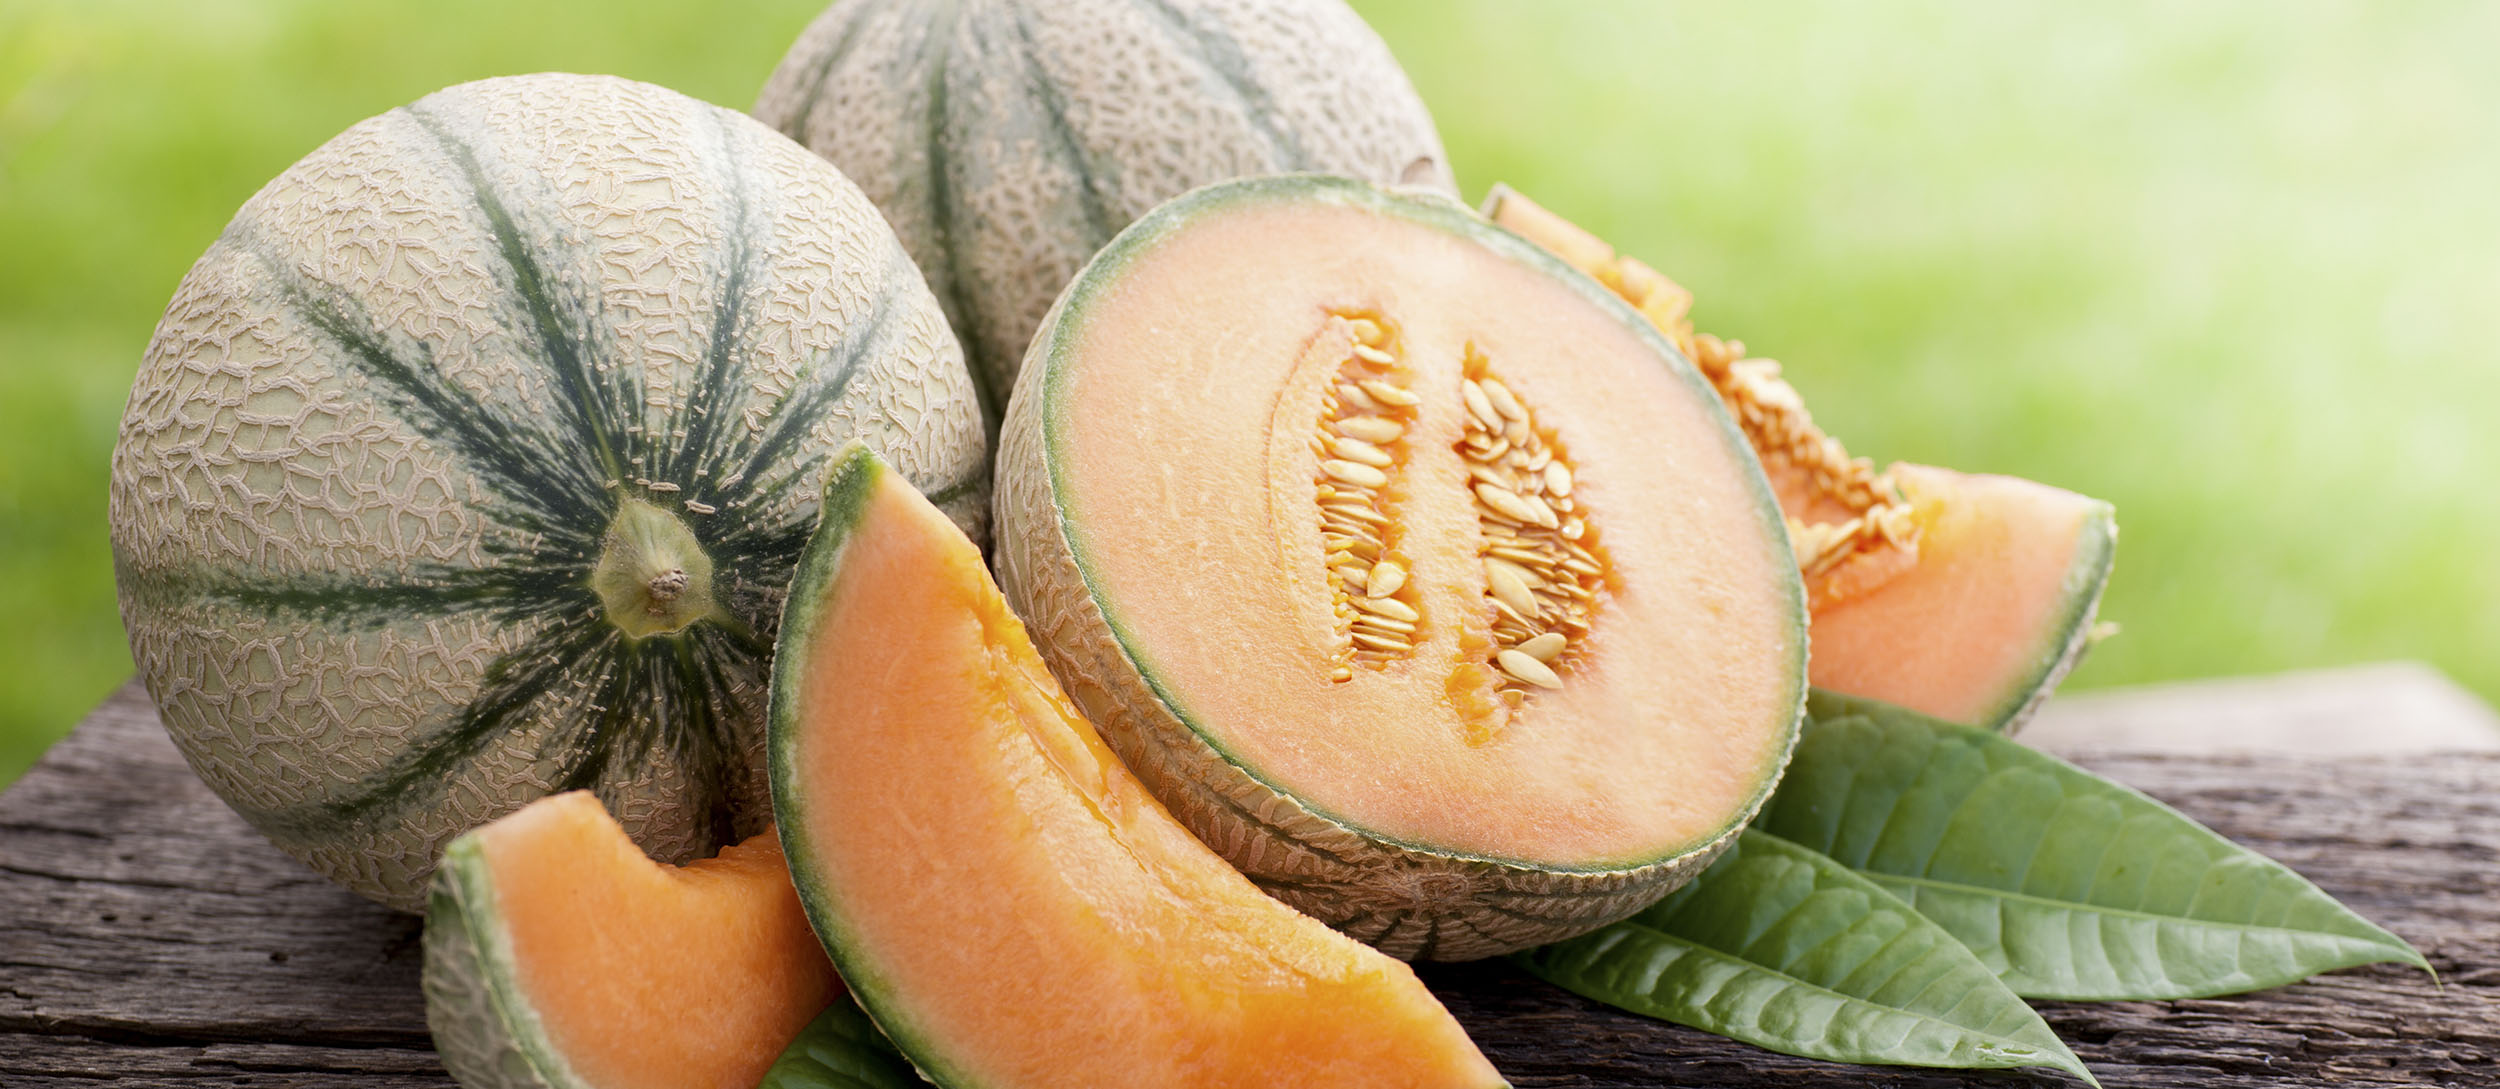 The Cantaloupe Fruit Has Extraordinary Health Benefits